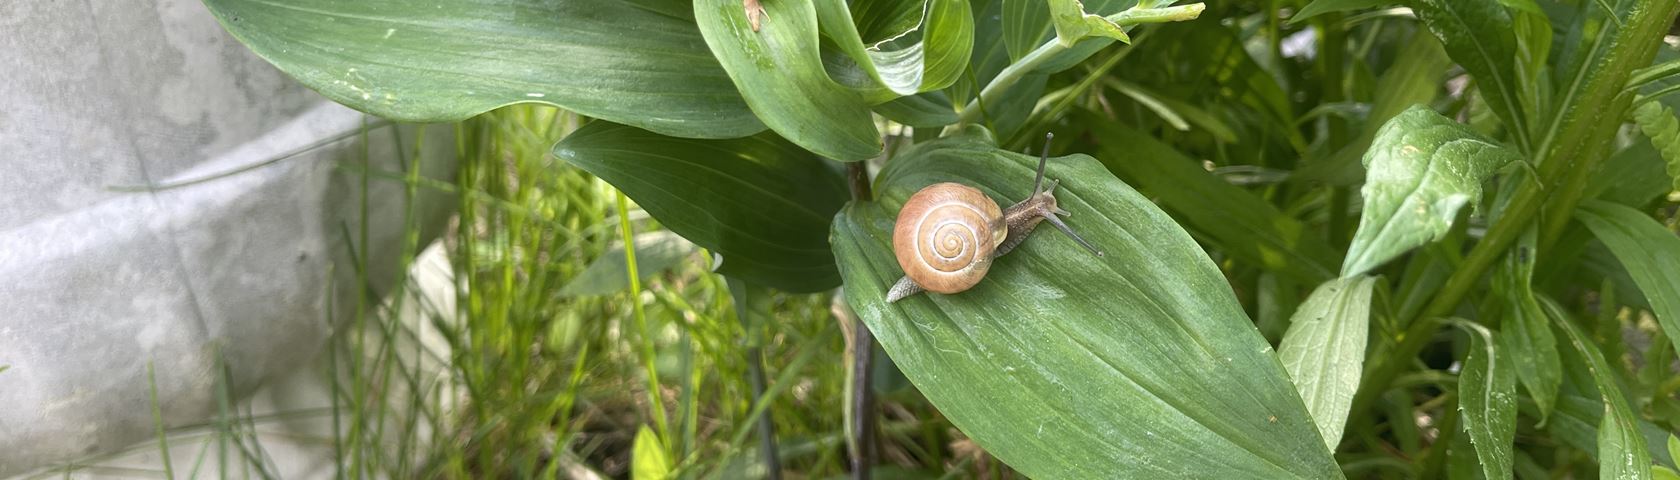 Evening Snail